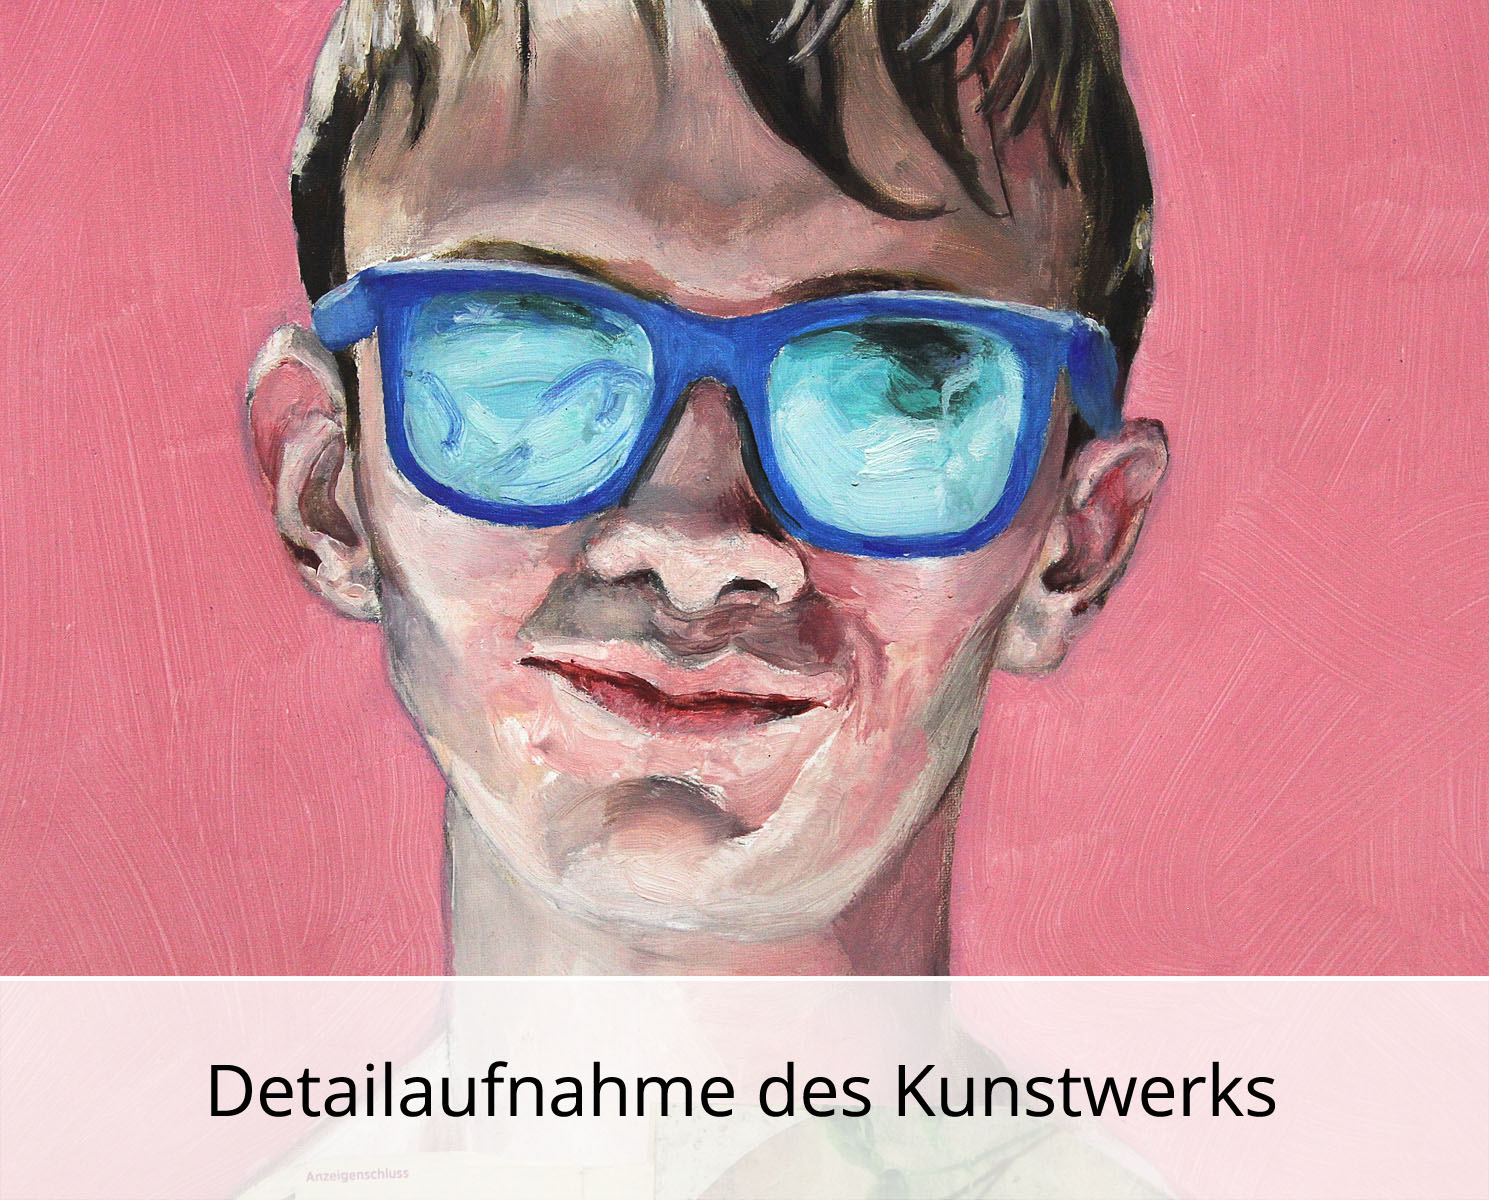 S. Petrunov: "Boy with the blue glasses", zeitgenössisches Originalgemälde